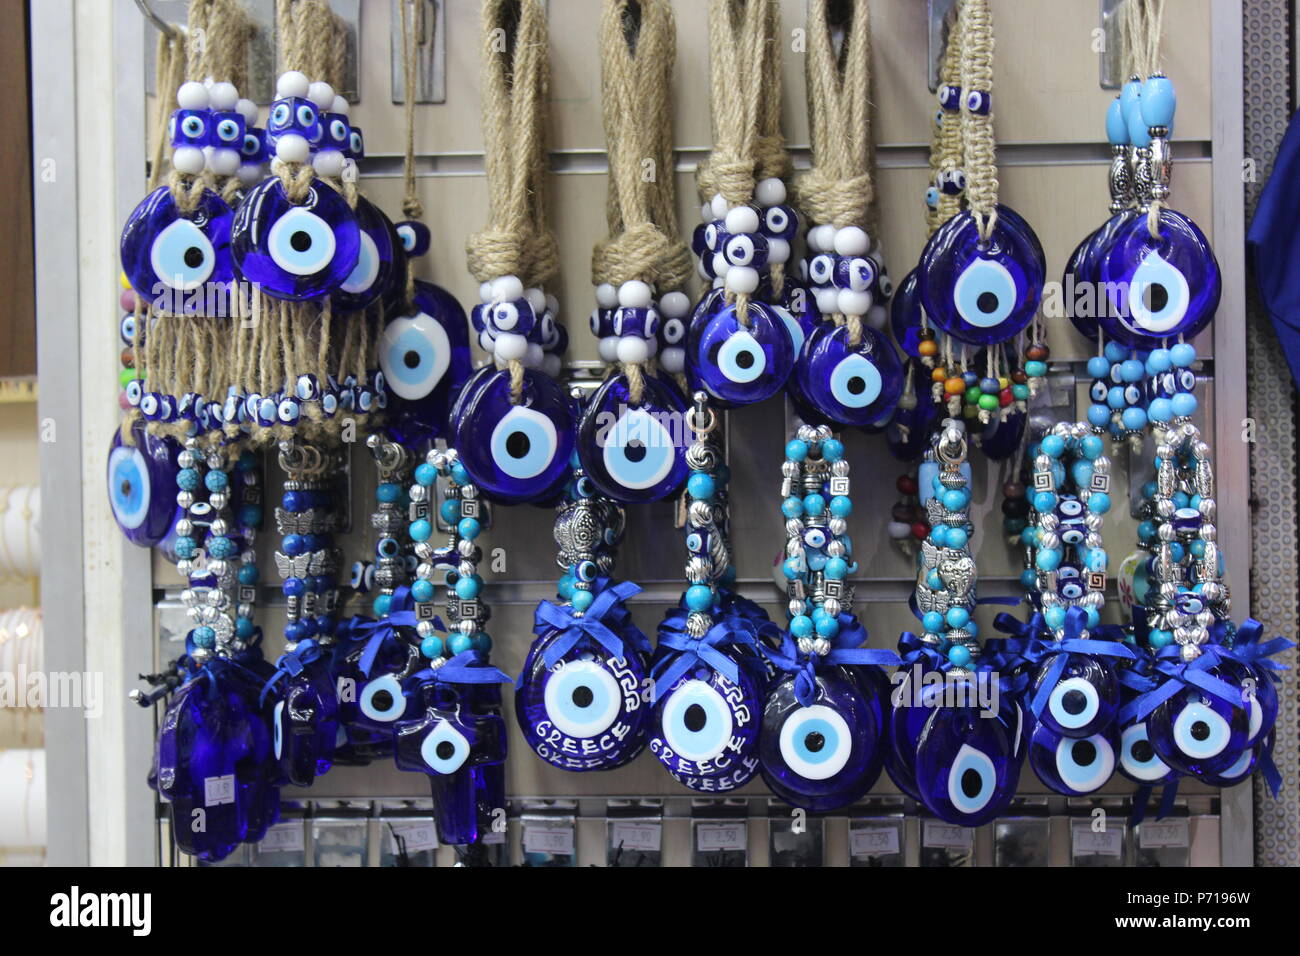 Mati böse Auge blauer Glasanhänger in Athen shop Griechenland Stockfoto